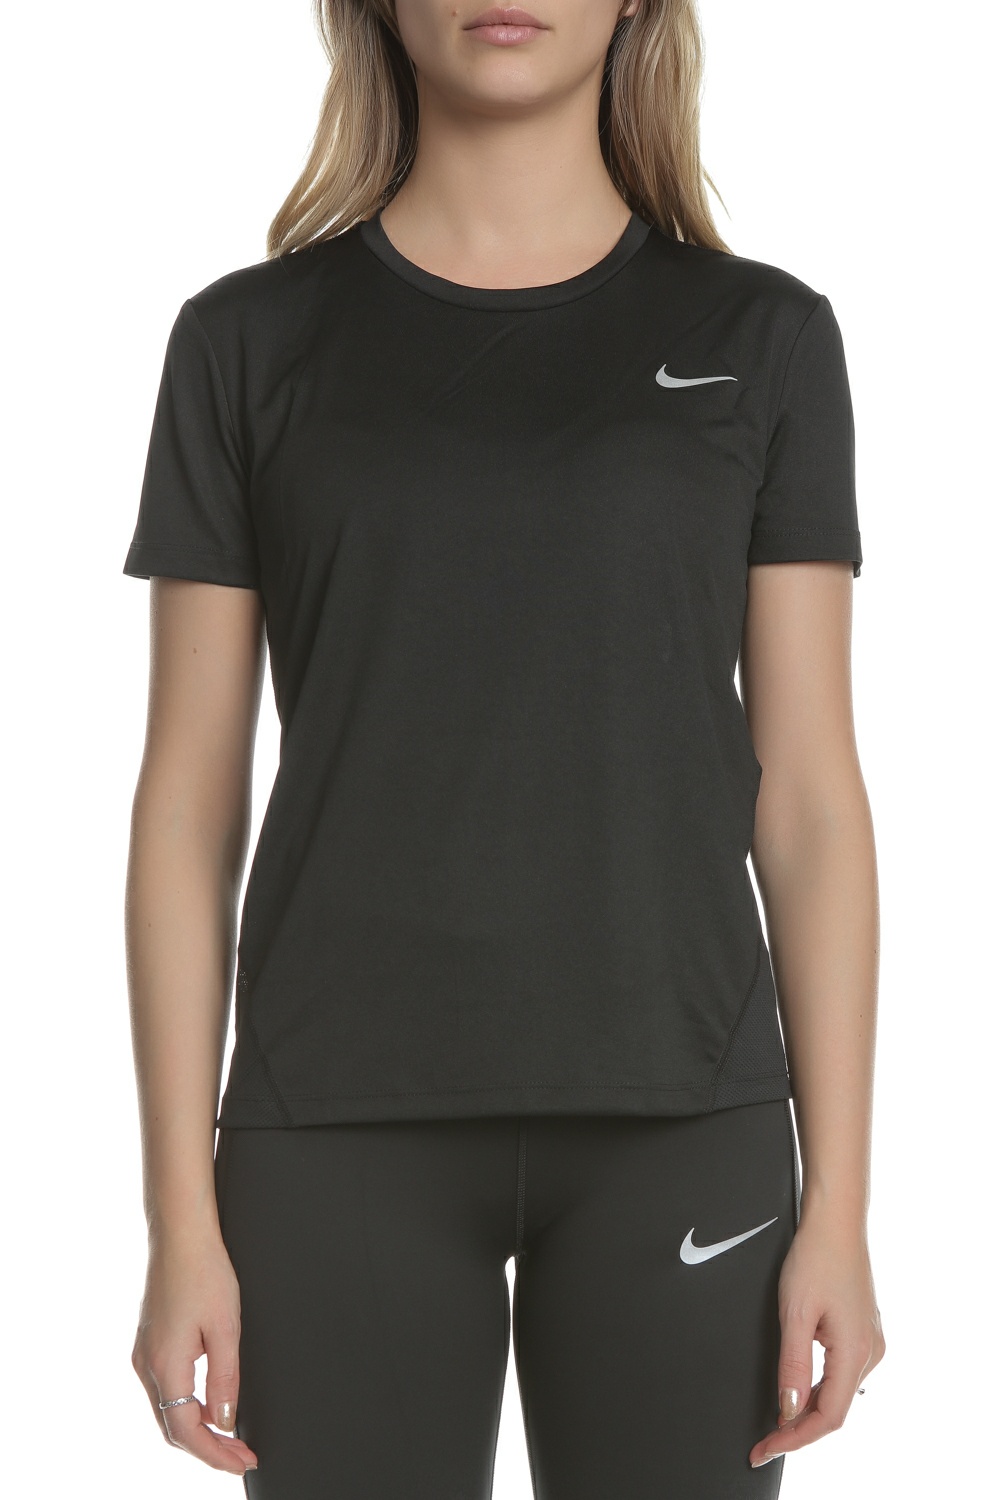 NIKE – Γυναικεία κοντομάνικη μπλούζα για τρέξιμο Nike Miler μαύρη